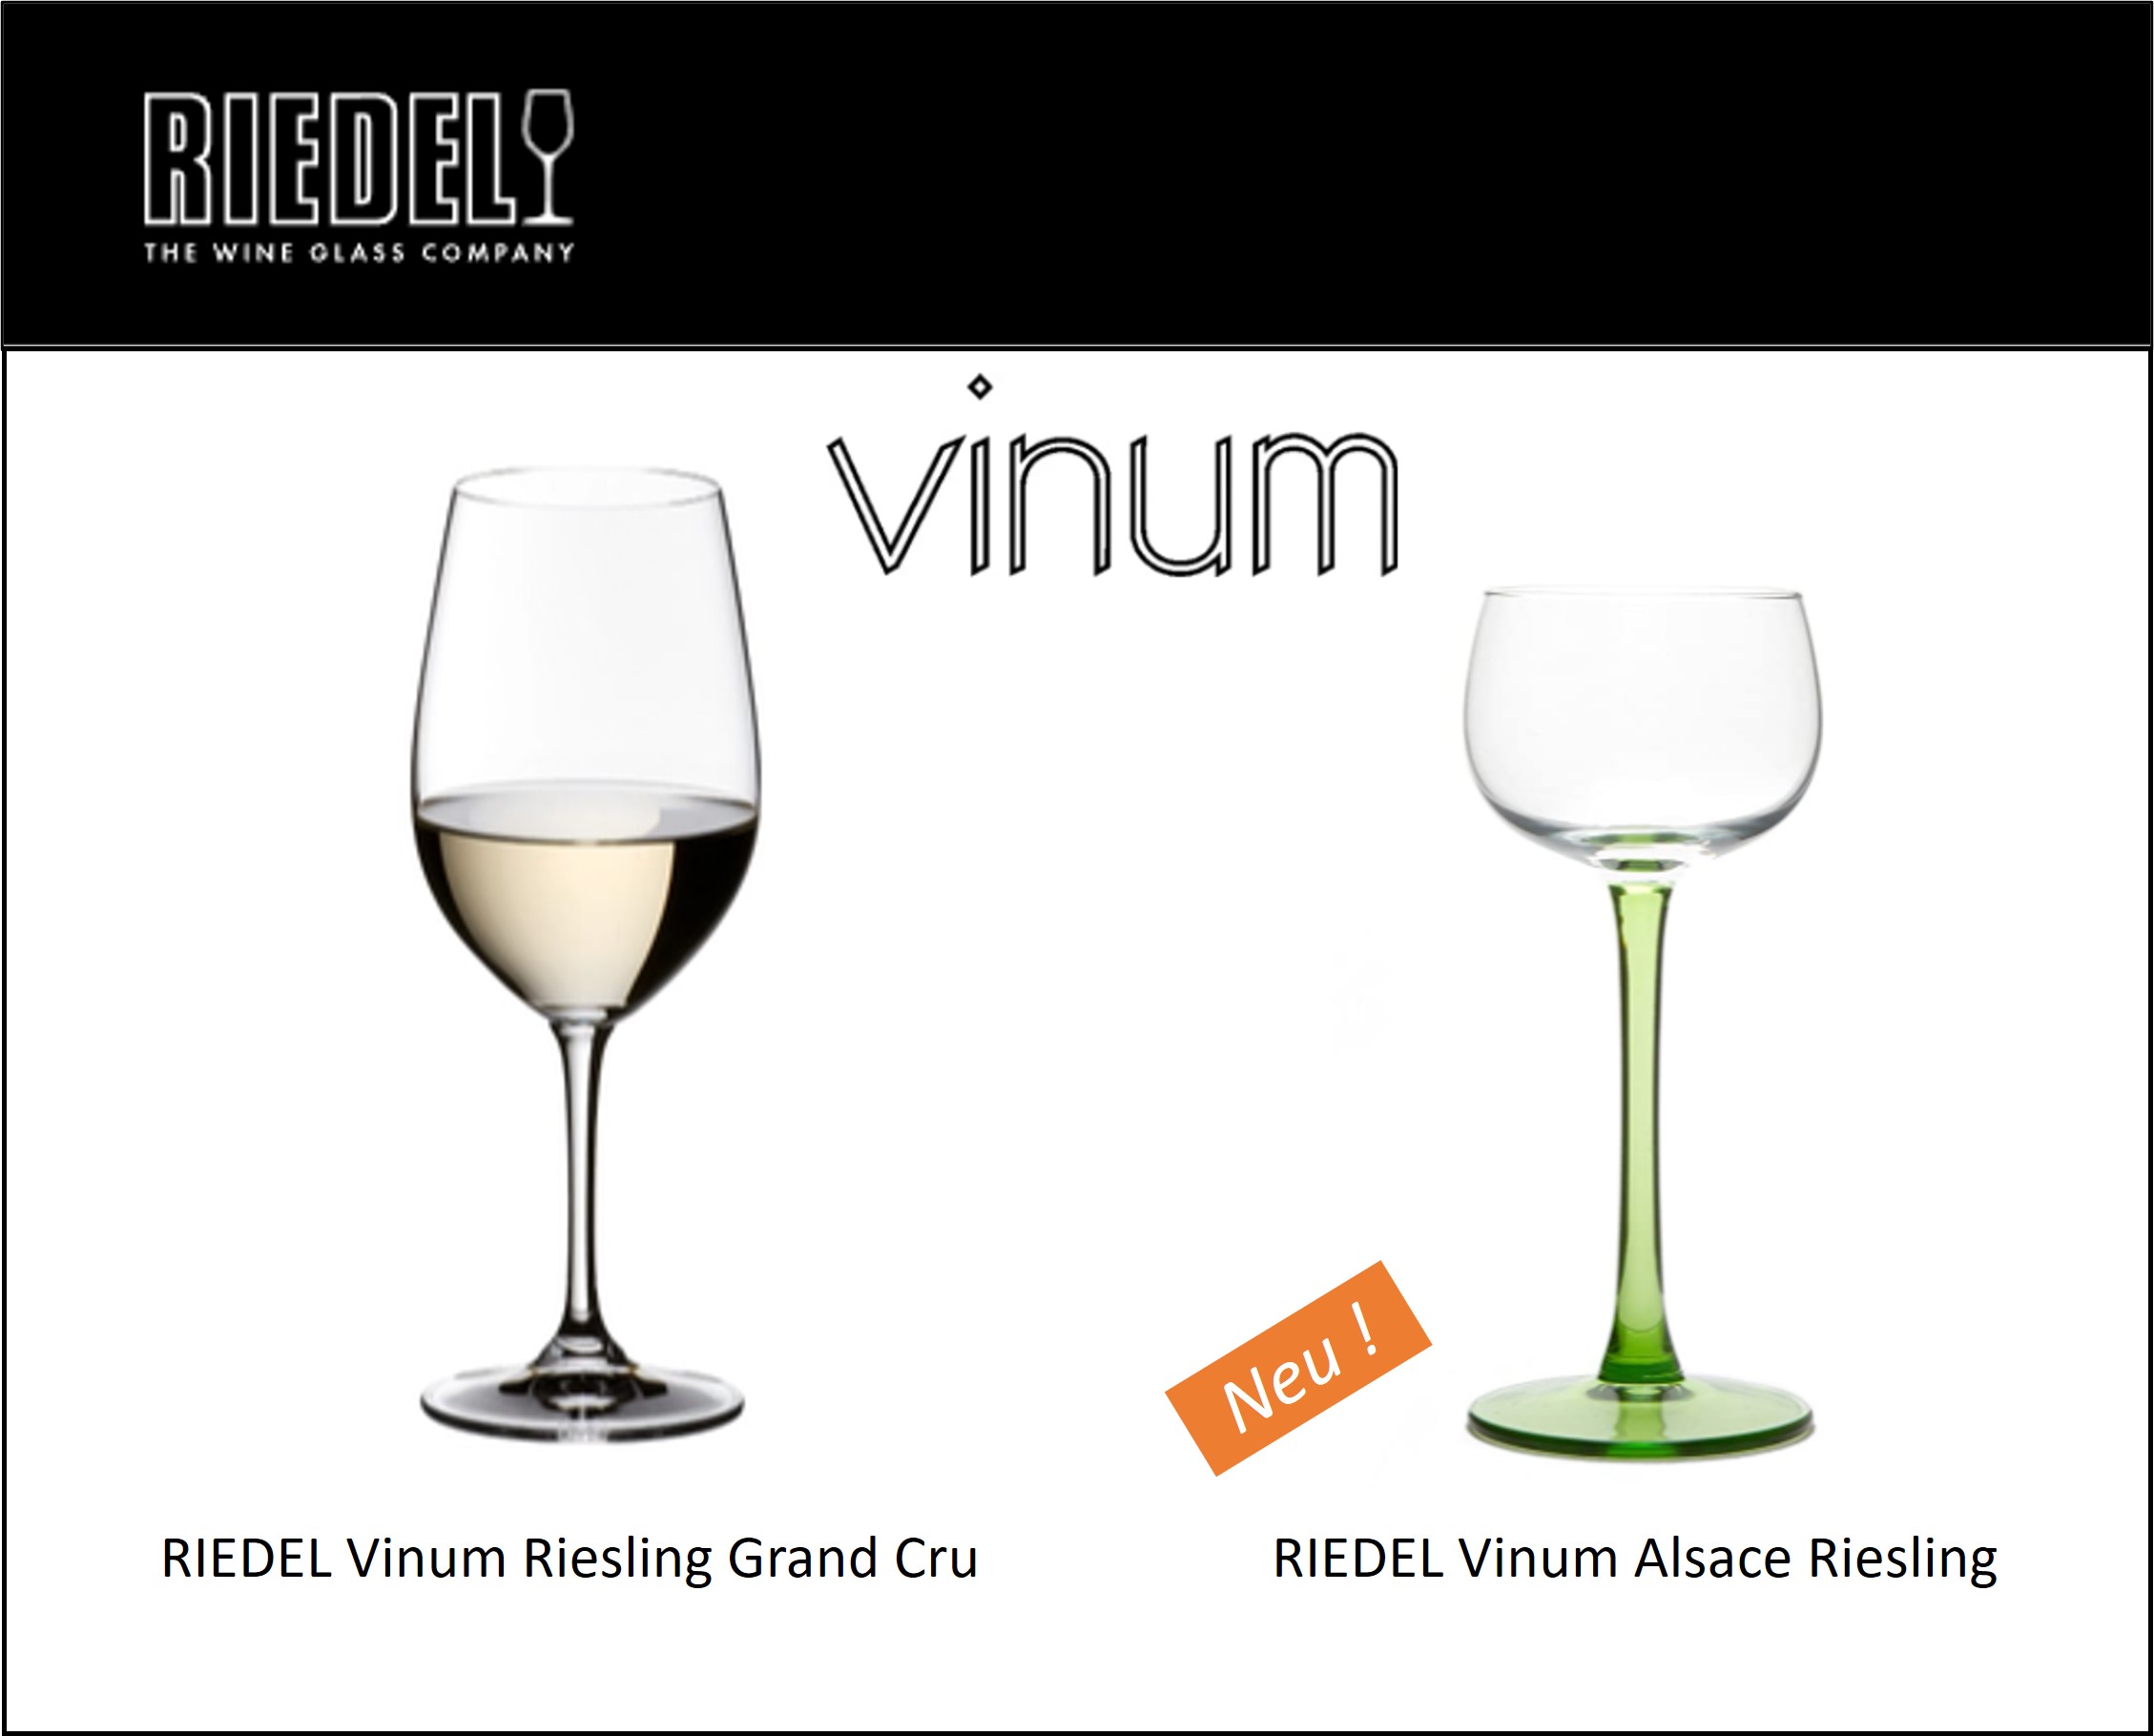 Le nouveau verre RIEDEL Vinum Alsace Riesling